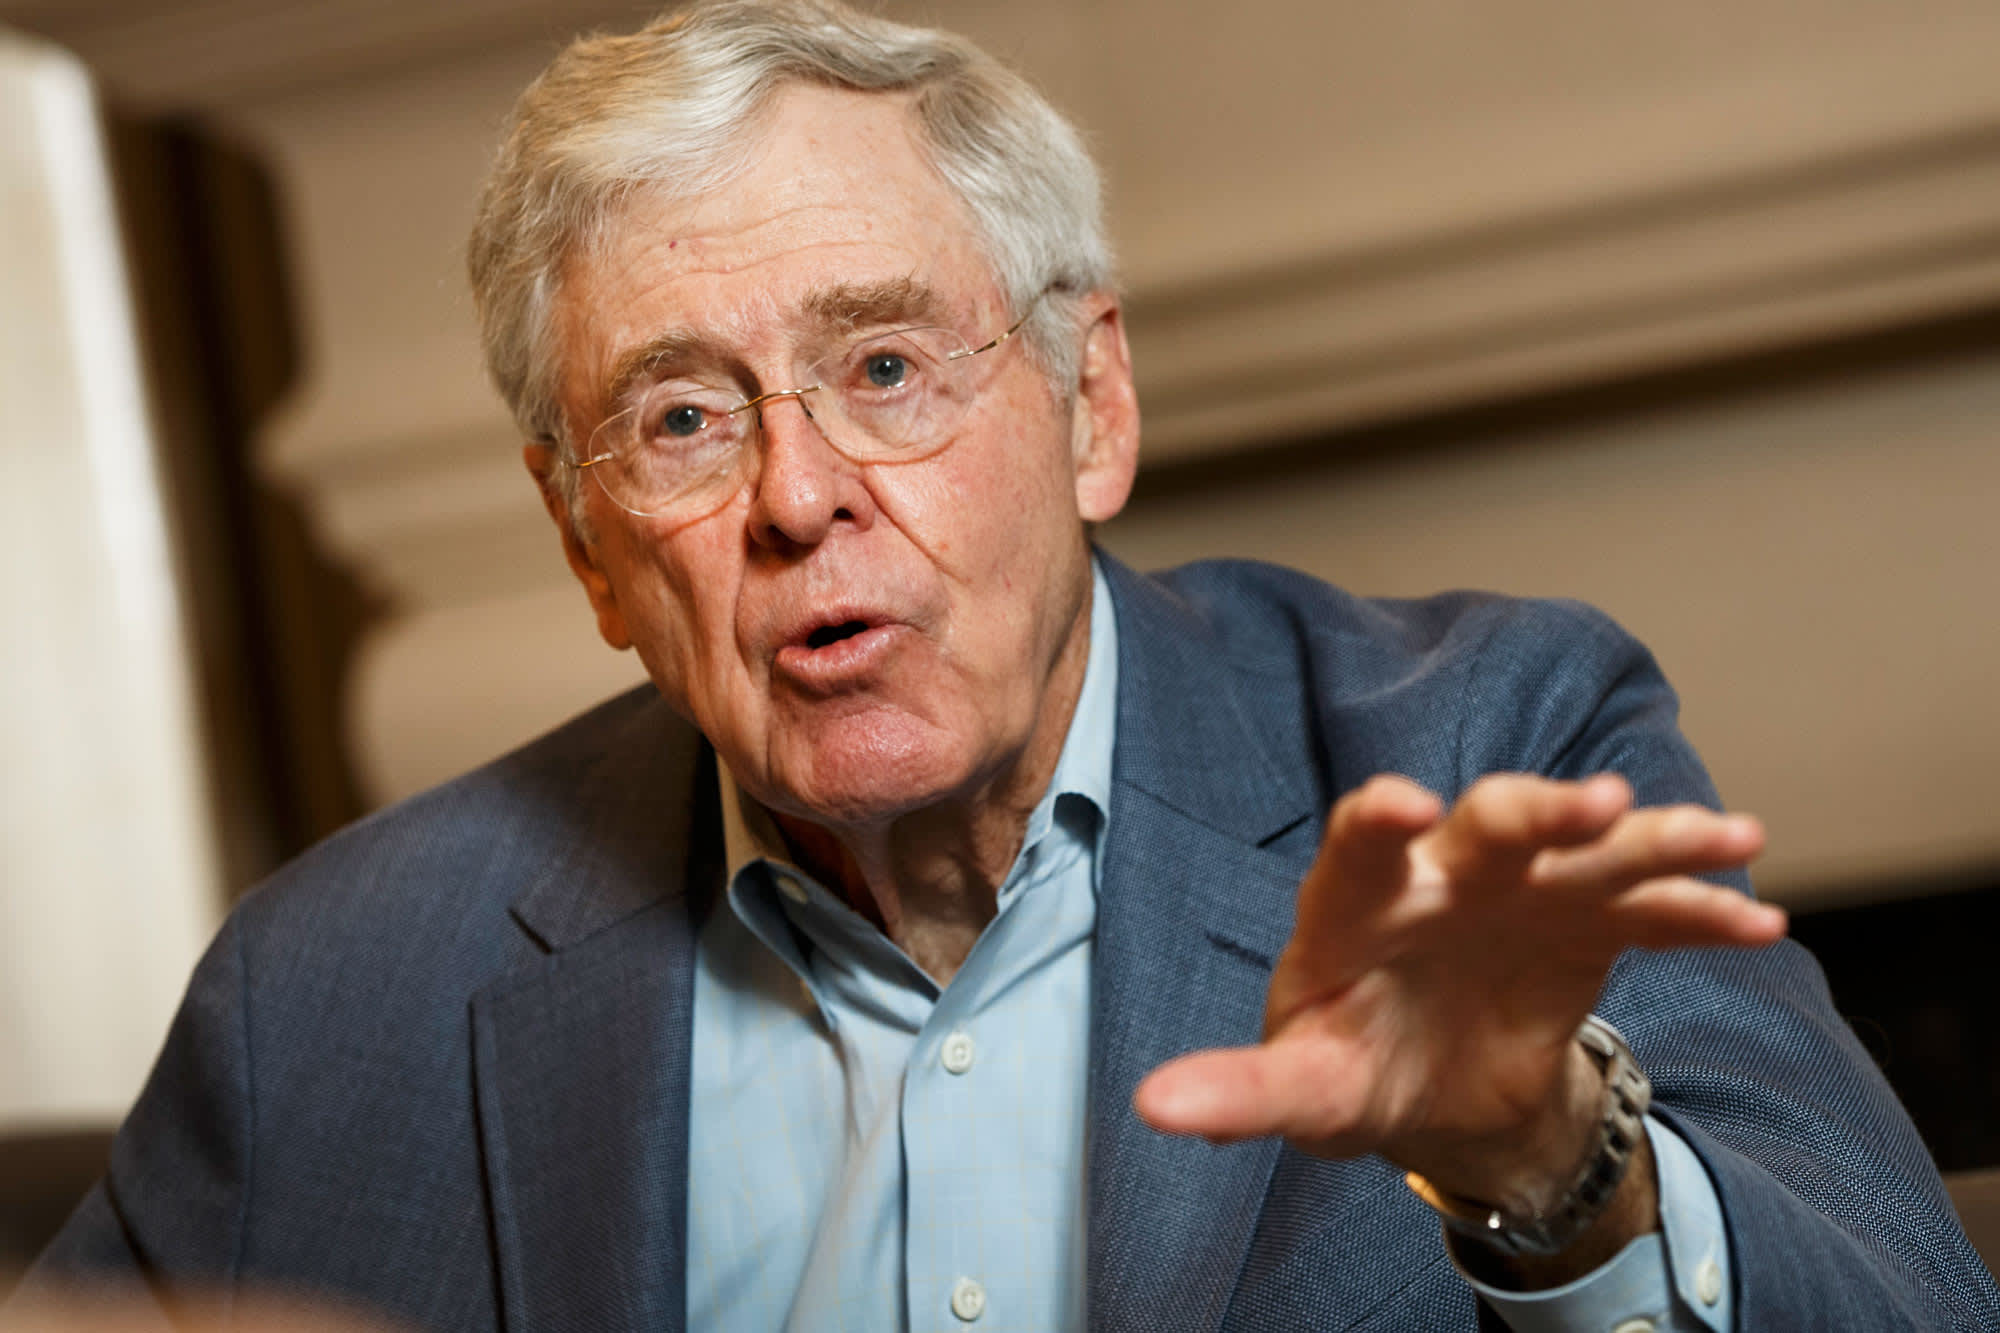 Koch network restarts door-to-door canvasing for GOP candidates despite coronavirus pandemic - CNBC